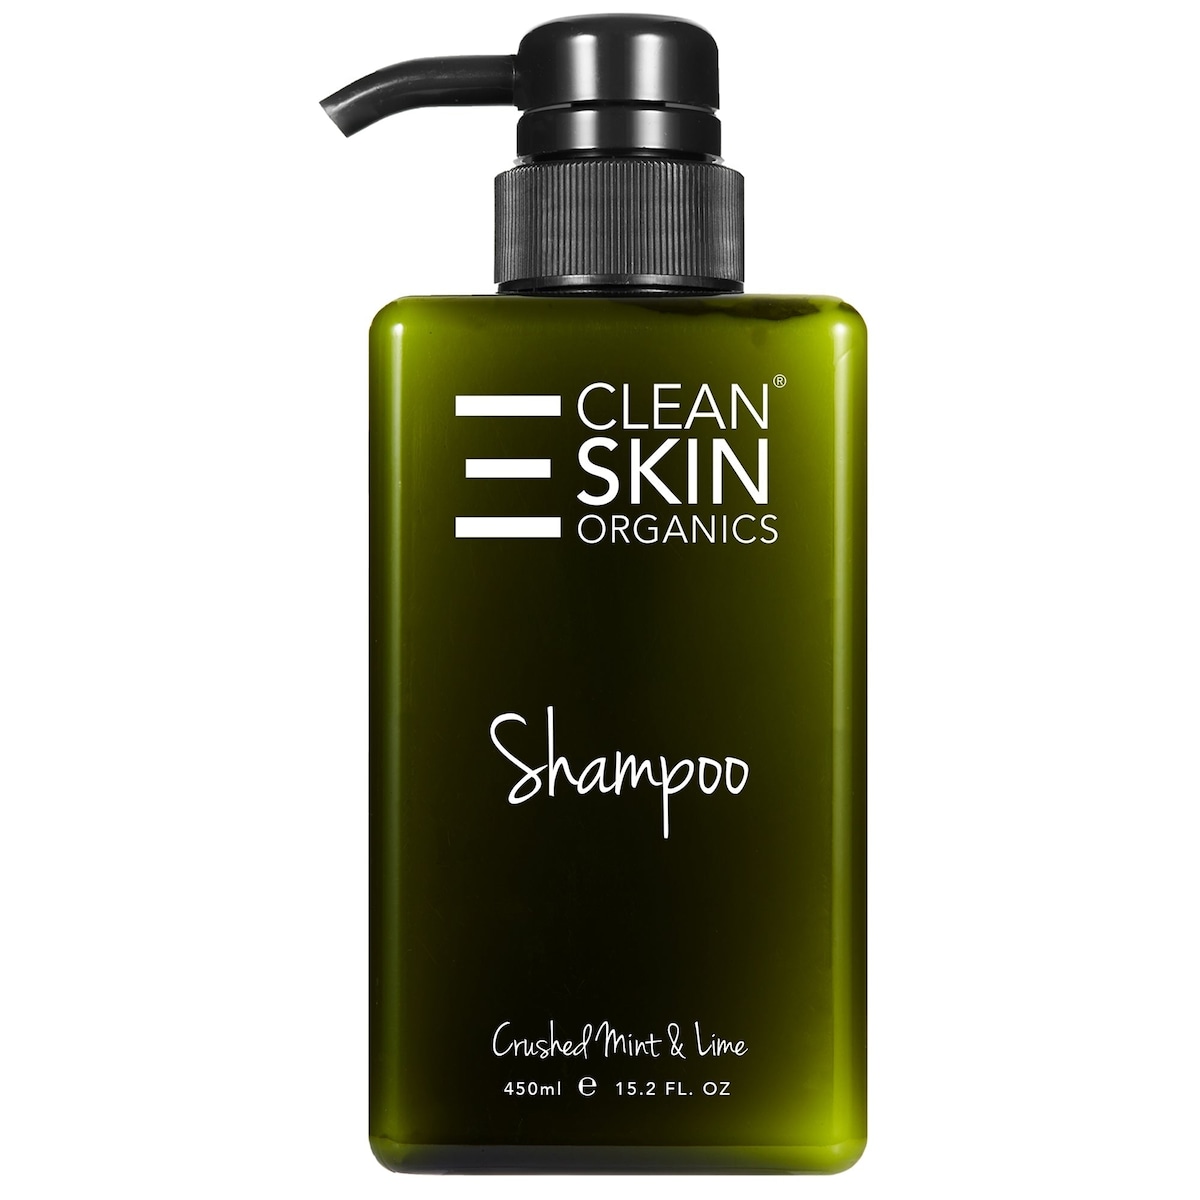 Clean Skin Organics Shampoo Crushed Mint and Lime 450ml